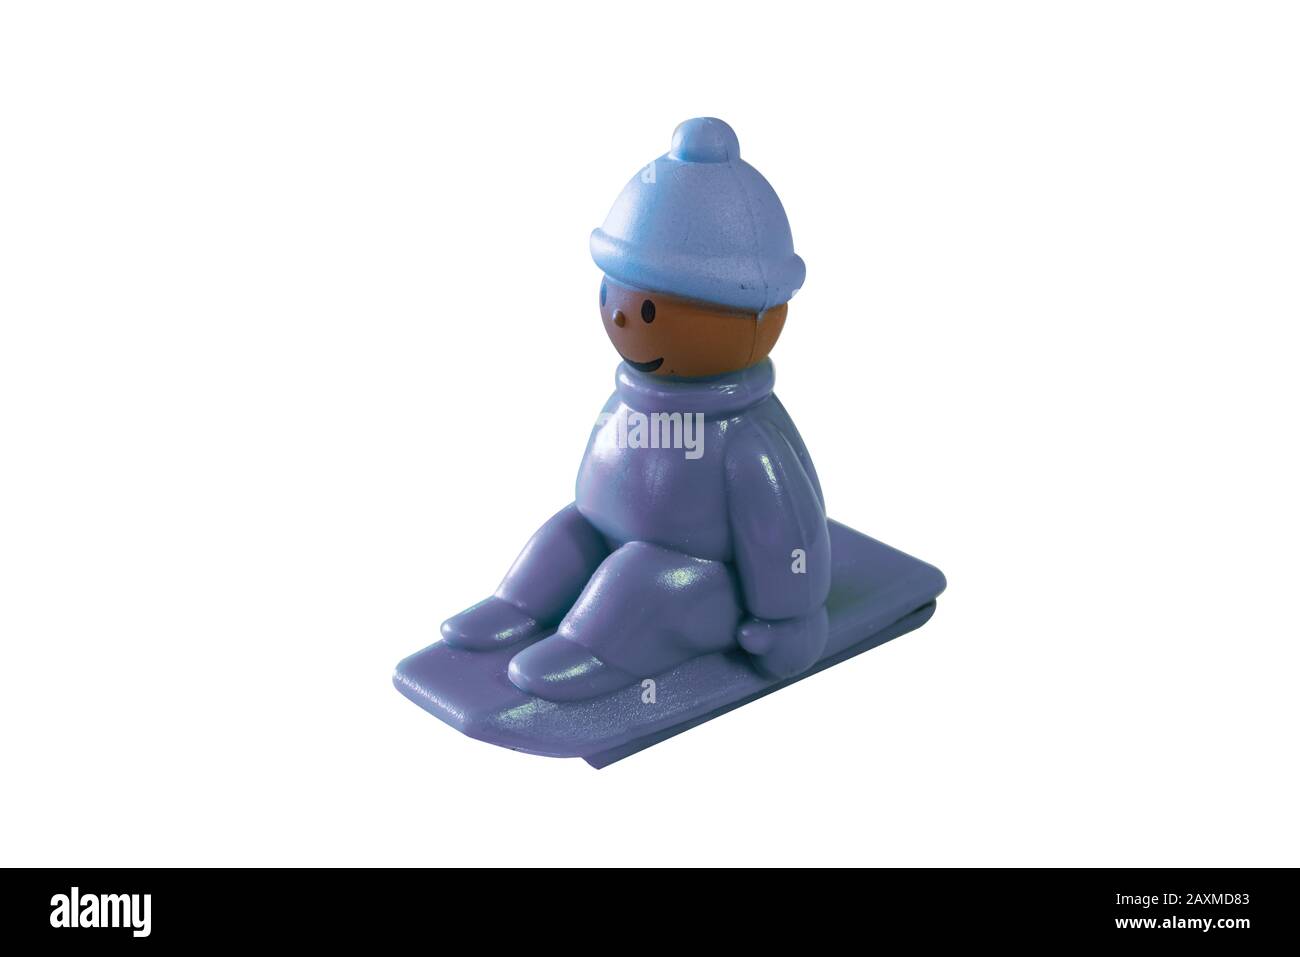 Kleines buntes Spielzeug für kleine Kinder eines Kindes, das auf einem Schlitten sitzt, der den Hügel hinuntergeht, mit einem Hut gegen die Kälte und den Fäusten, die eng am sitzen Stockfoto